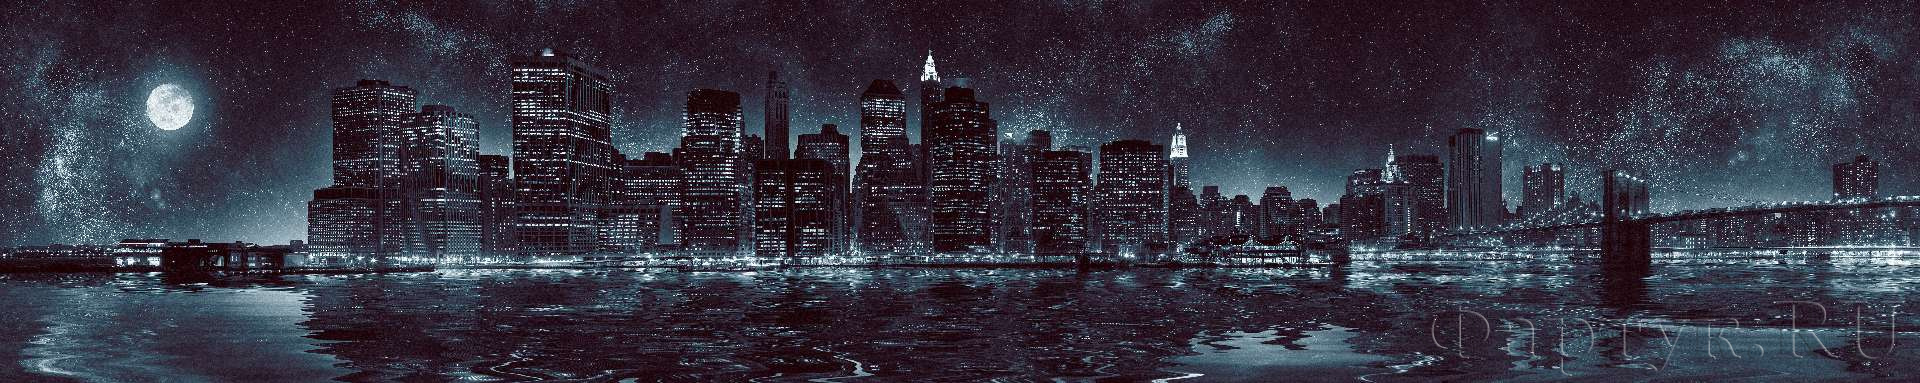 Ночной Нью-Йорк со звездным небом